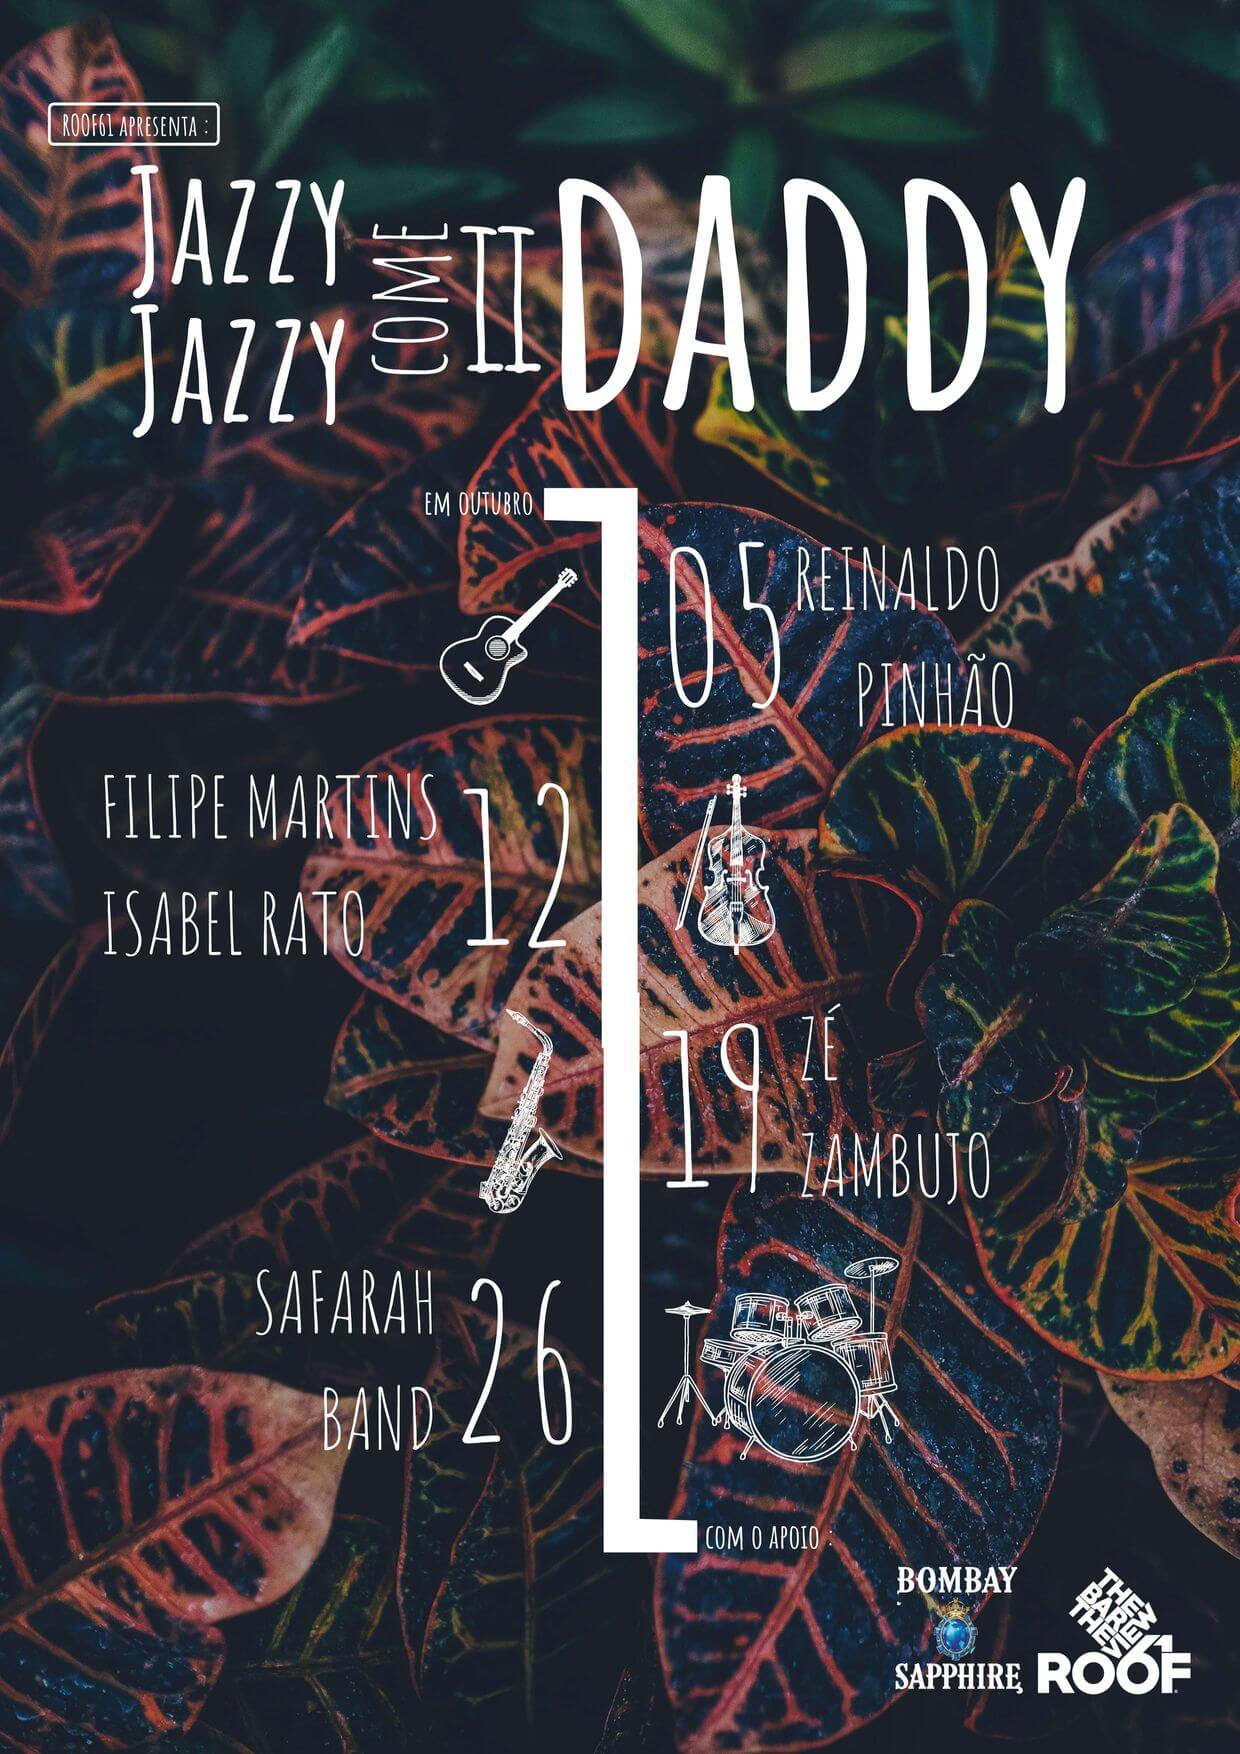 Jazzy Jazzy come ii Daddy Cartaz - Roof61 - Setubal